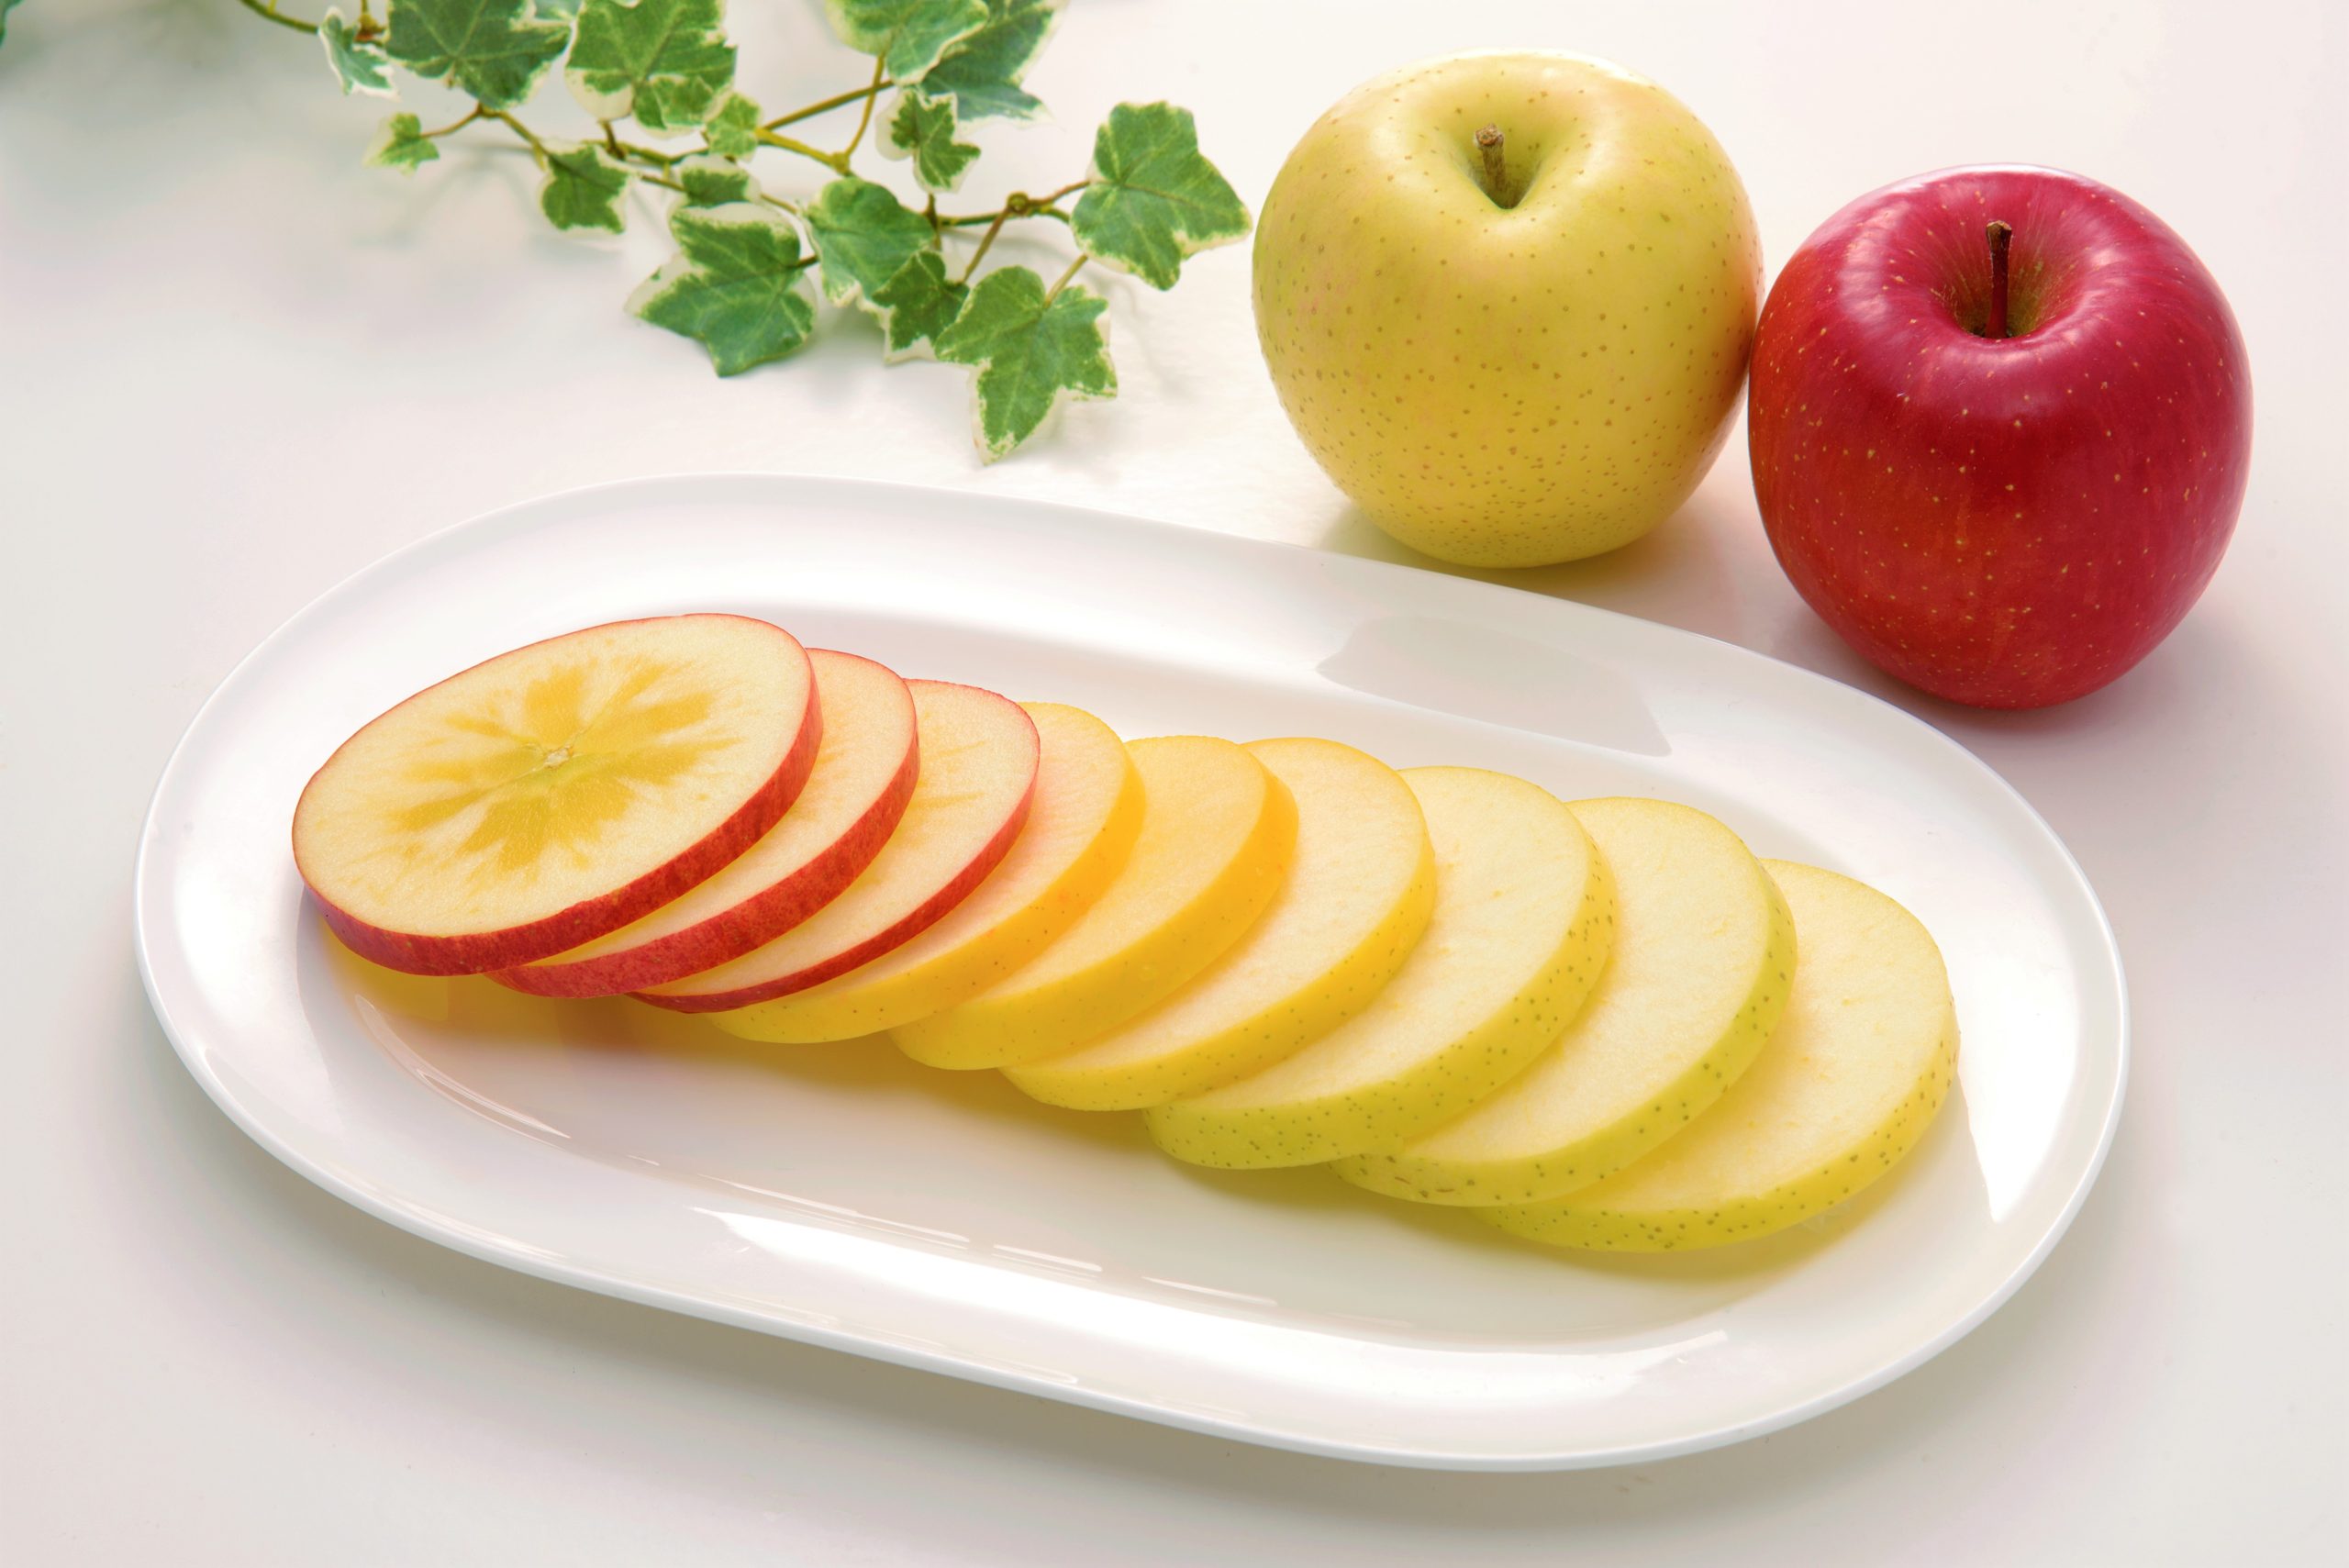 りんごは皮ごと食べて美味しく栄養を摂取 青森りんご公式サイト 一社 青森県りんご対策協議会